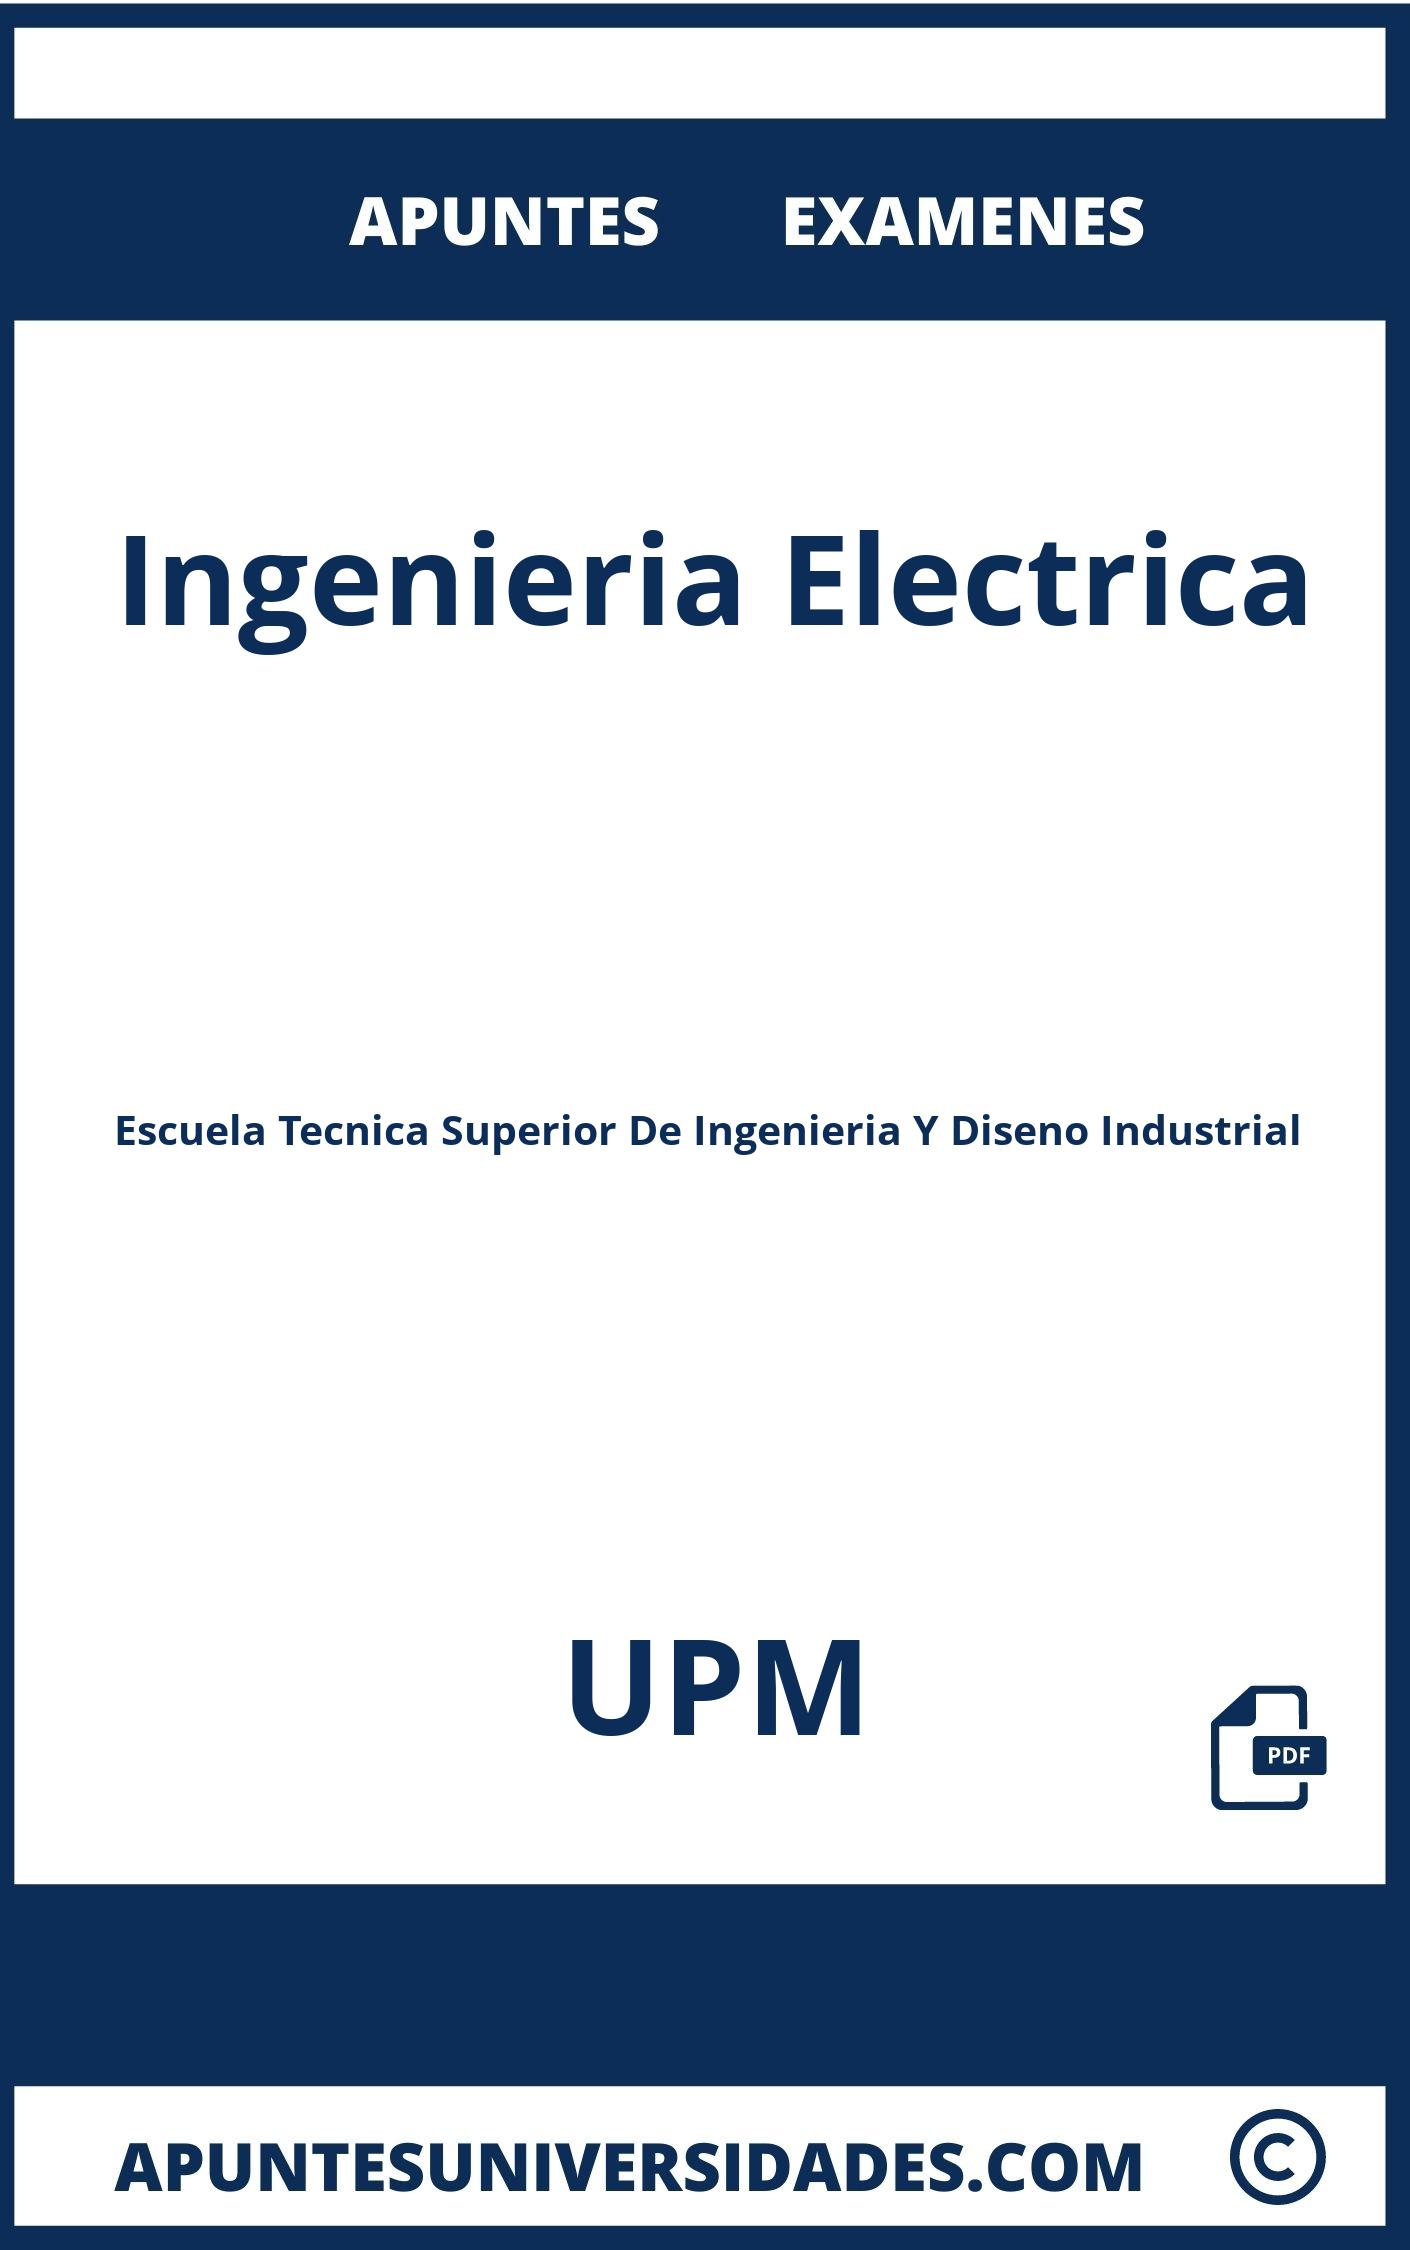 Apuntes y Examenes de Ingenieria Electrica UPM